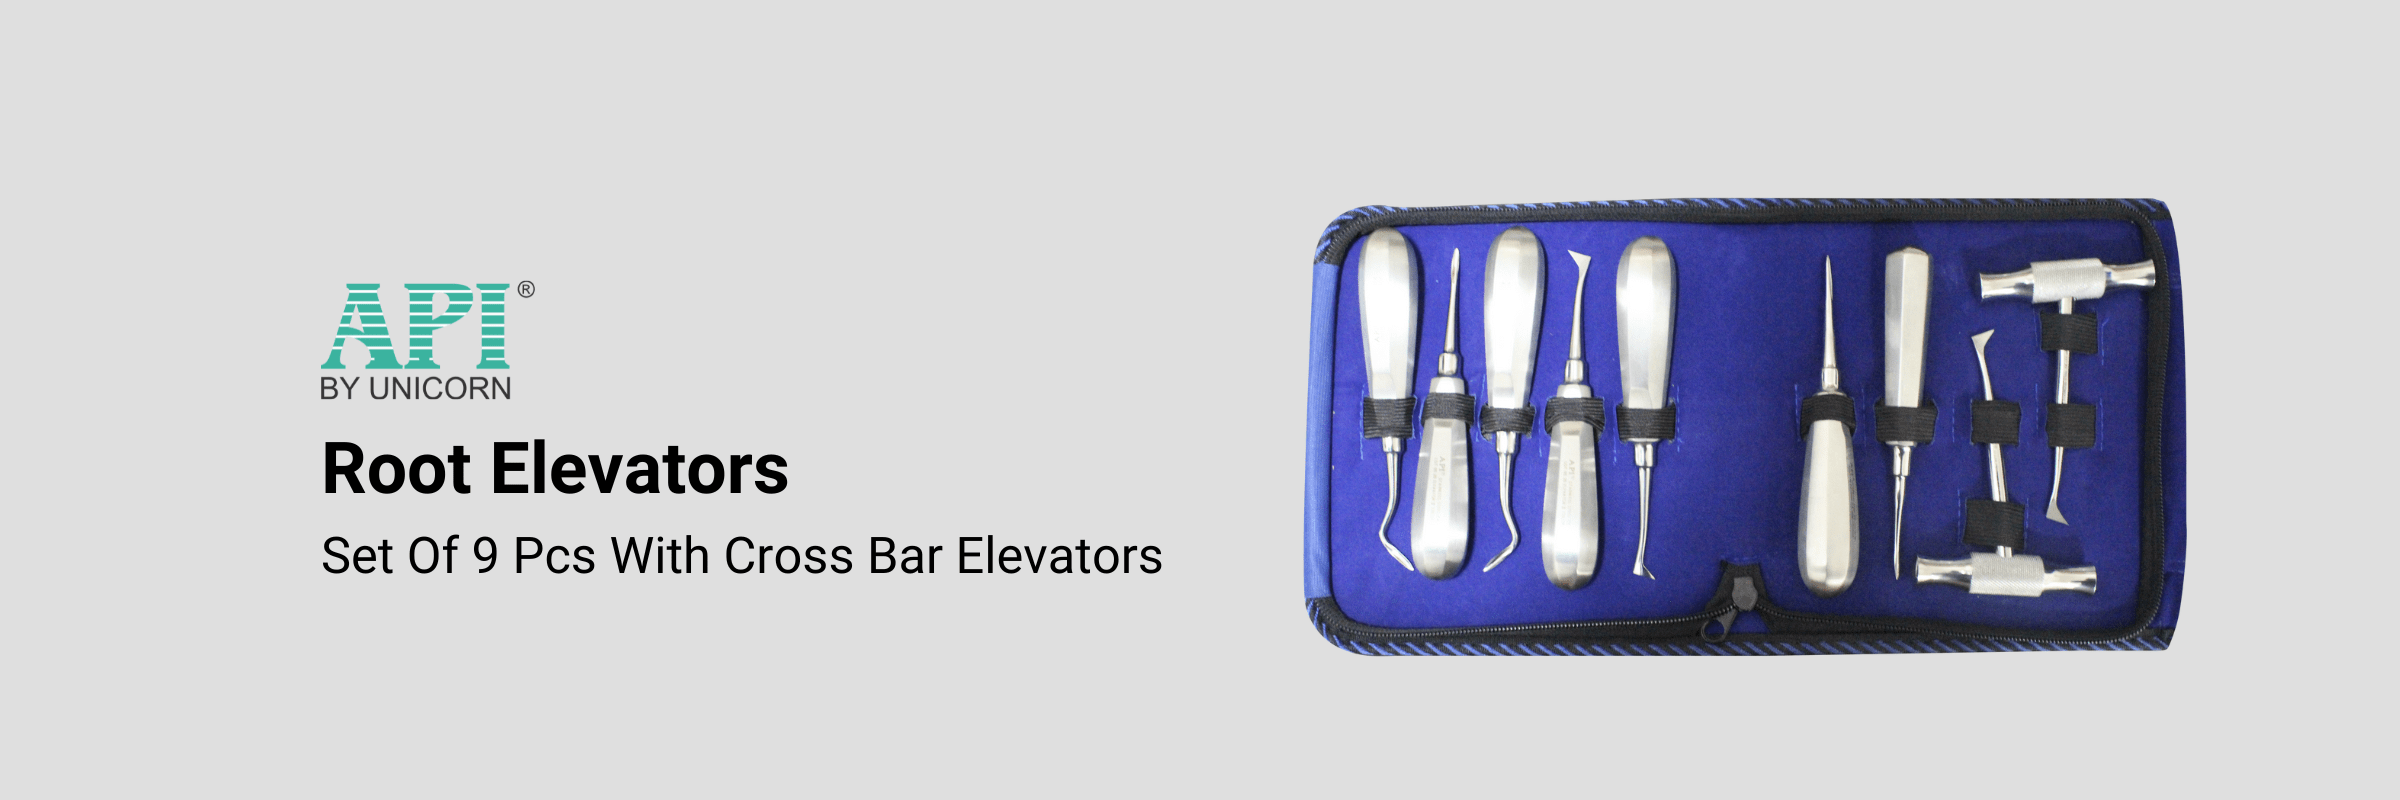 Root Elevators Set Of 9 Pcs With Cross Bar Elevators